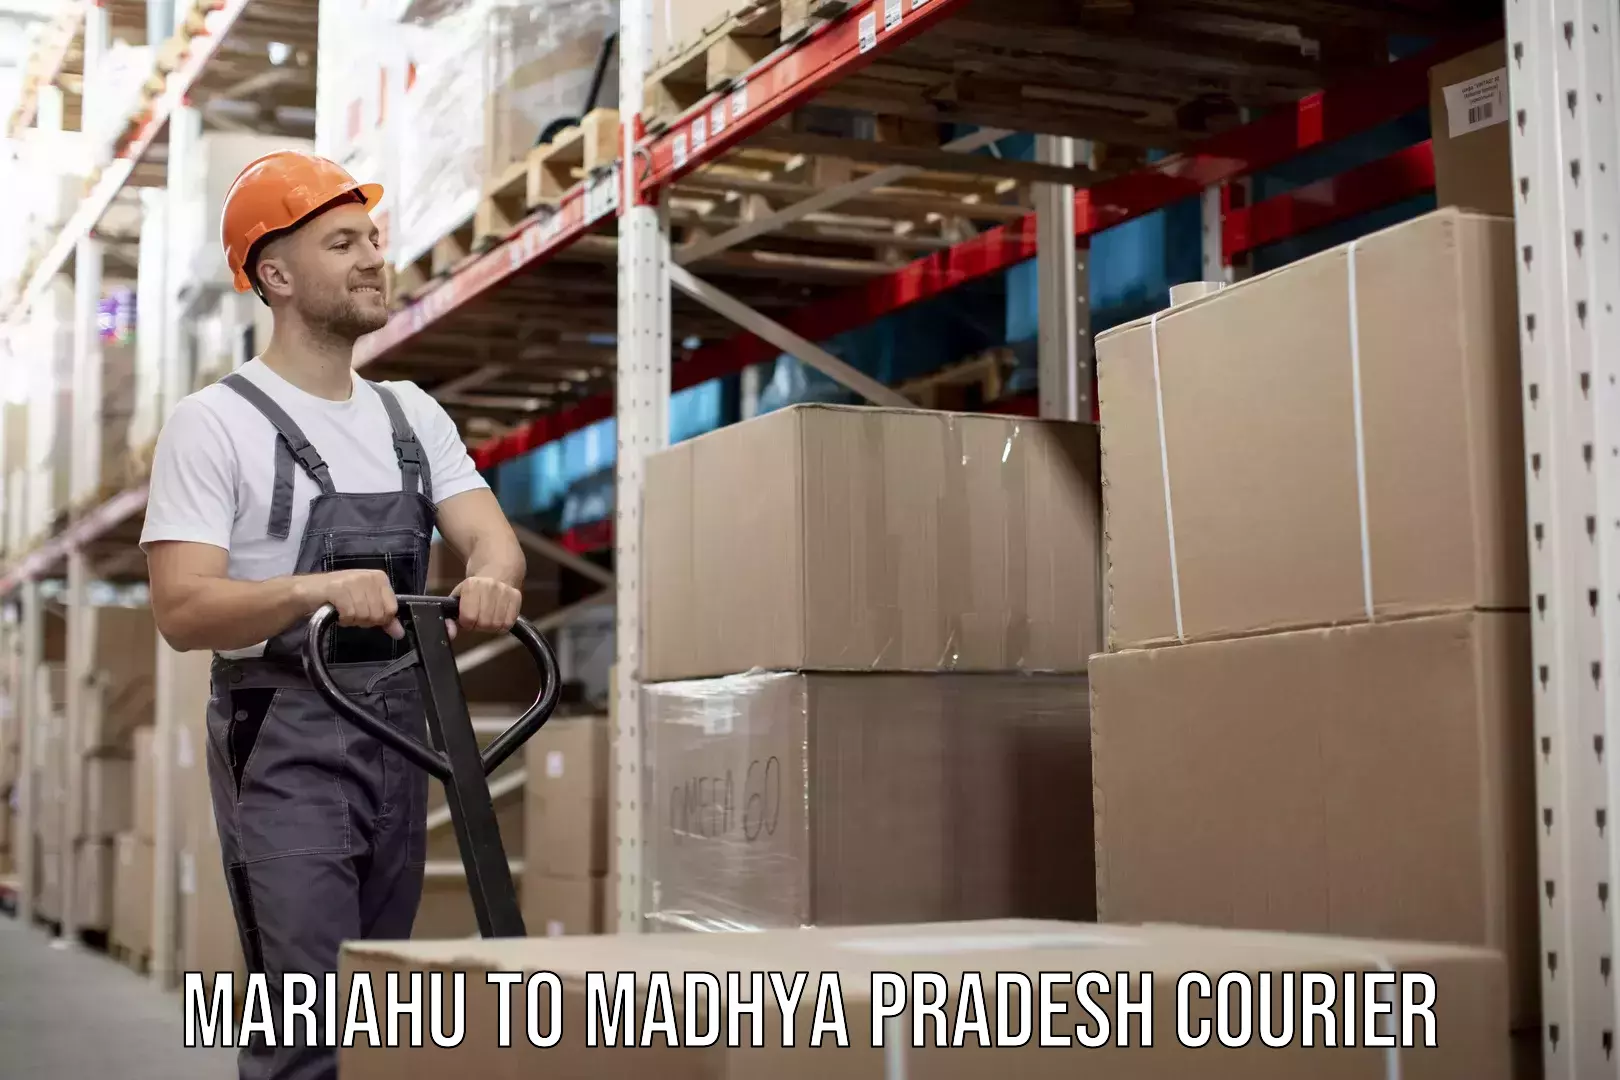 Furniture movers and packers Mariahu to Madhya Pradesh